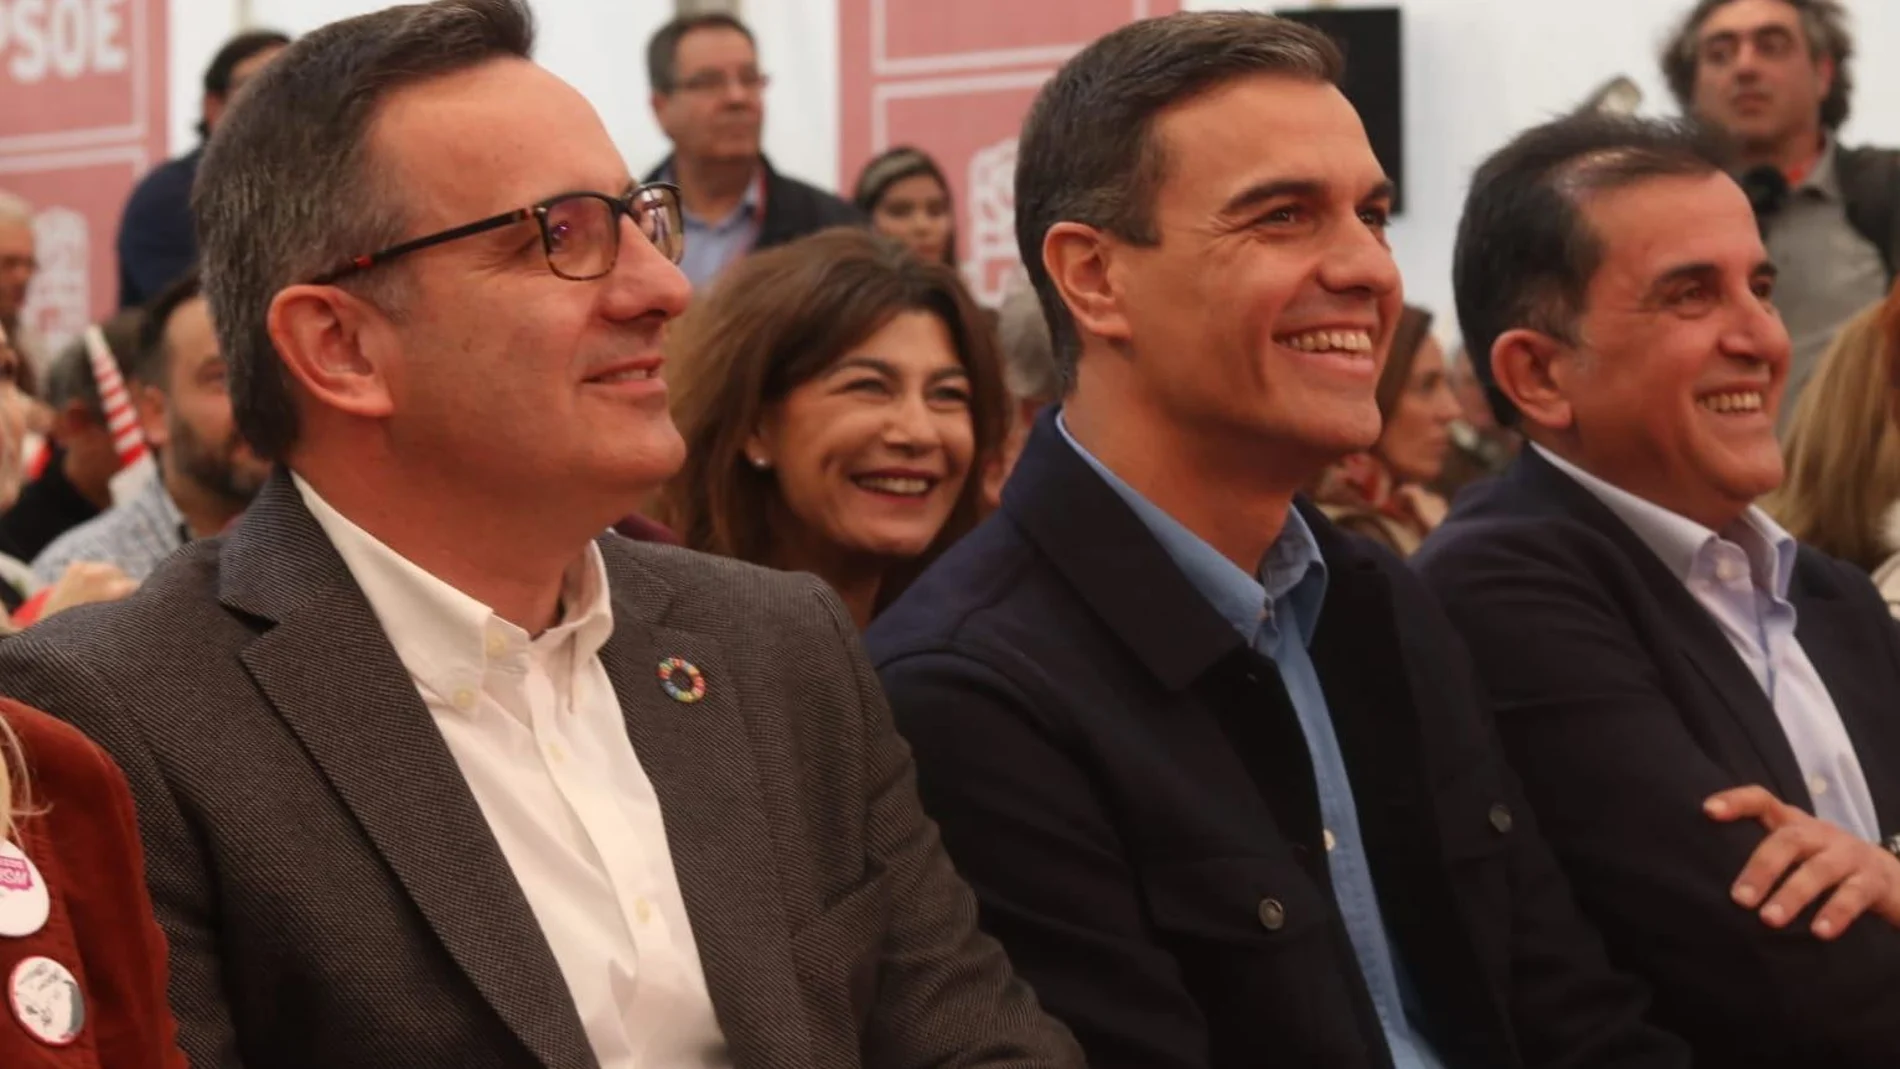 Pedro Sánchez estuvo ayer en Murcia acompañado de Diego Conesa, el candidato a presidir el Ayuntamiento de la capital, José Antonio Serrano y otros líderes del PSRM. LA RAZÓN